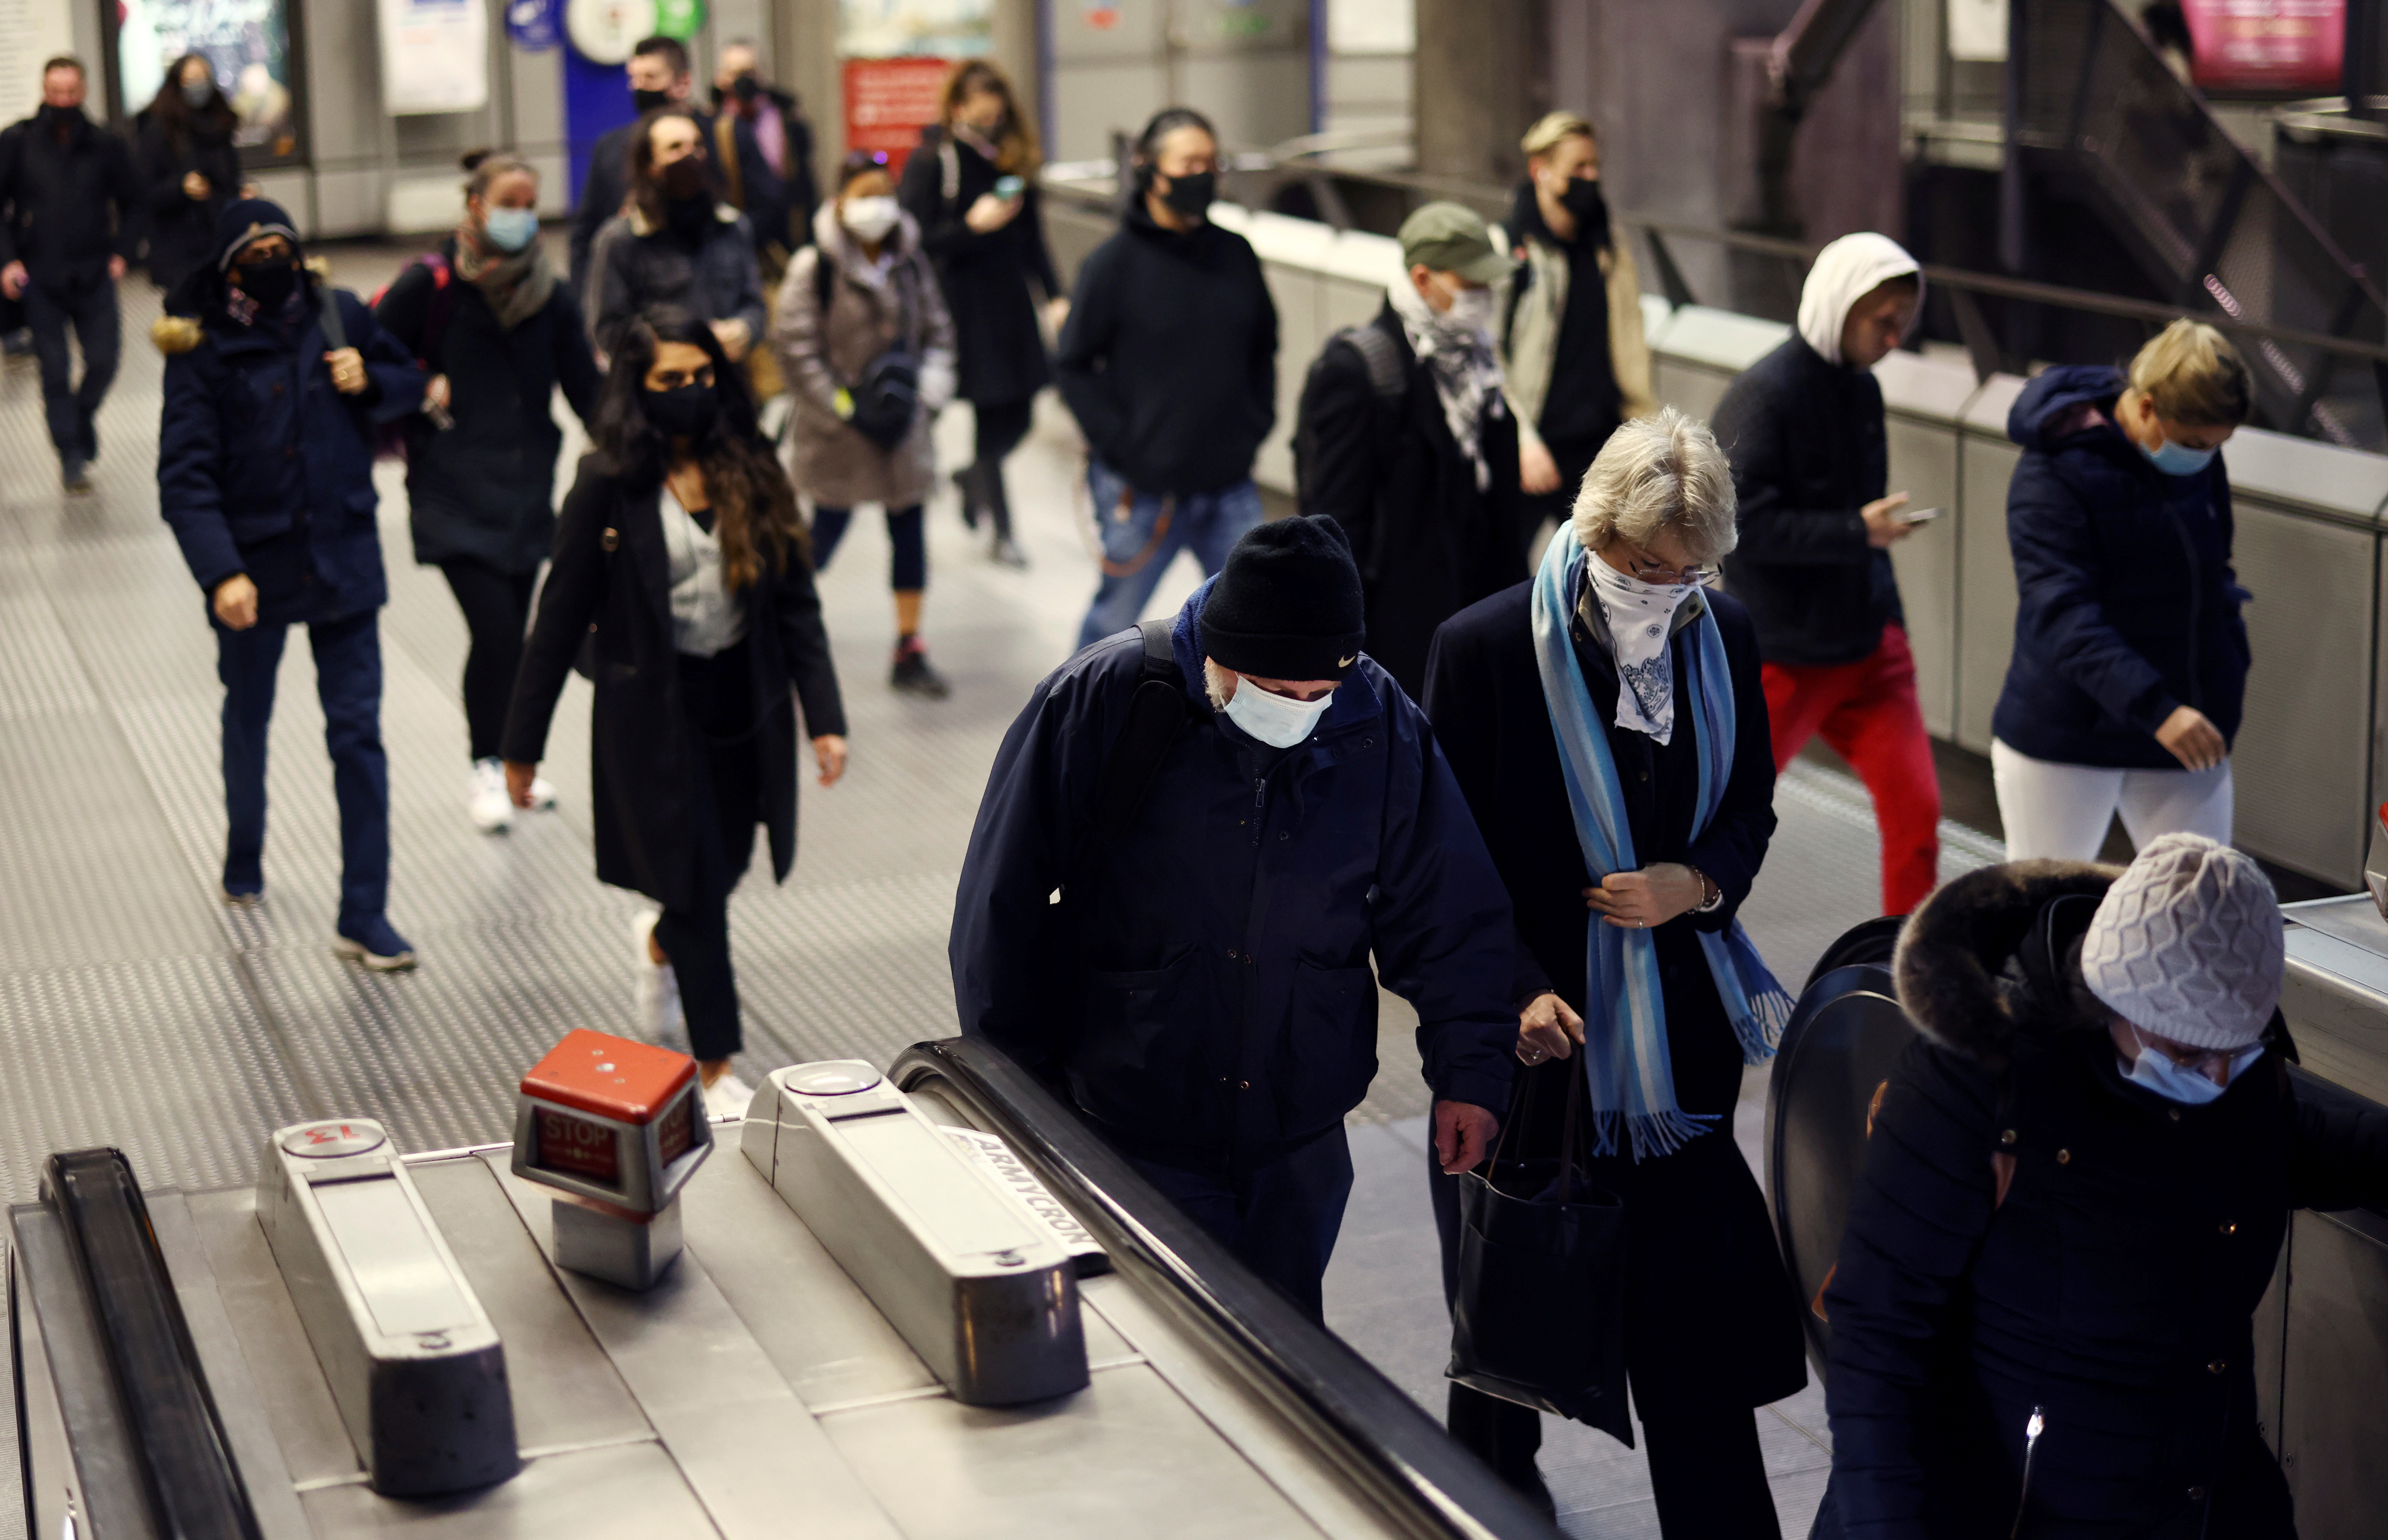 Njerëzit ecin nëpër stacionin e metrosë Westminster gjatë orës së pikut të mëngjesit, mes shpërthimit të sëmundjes së koronavirusit (COVID-19) në Londër, Britani, 1 dhjetor 2021. REUTERS/Henry Nicholls